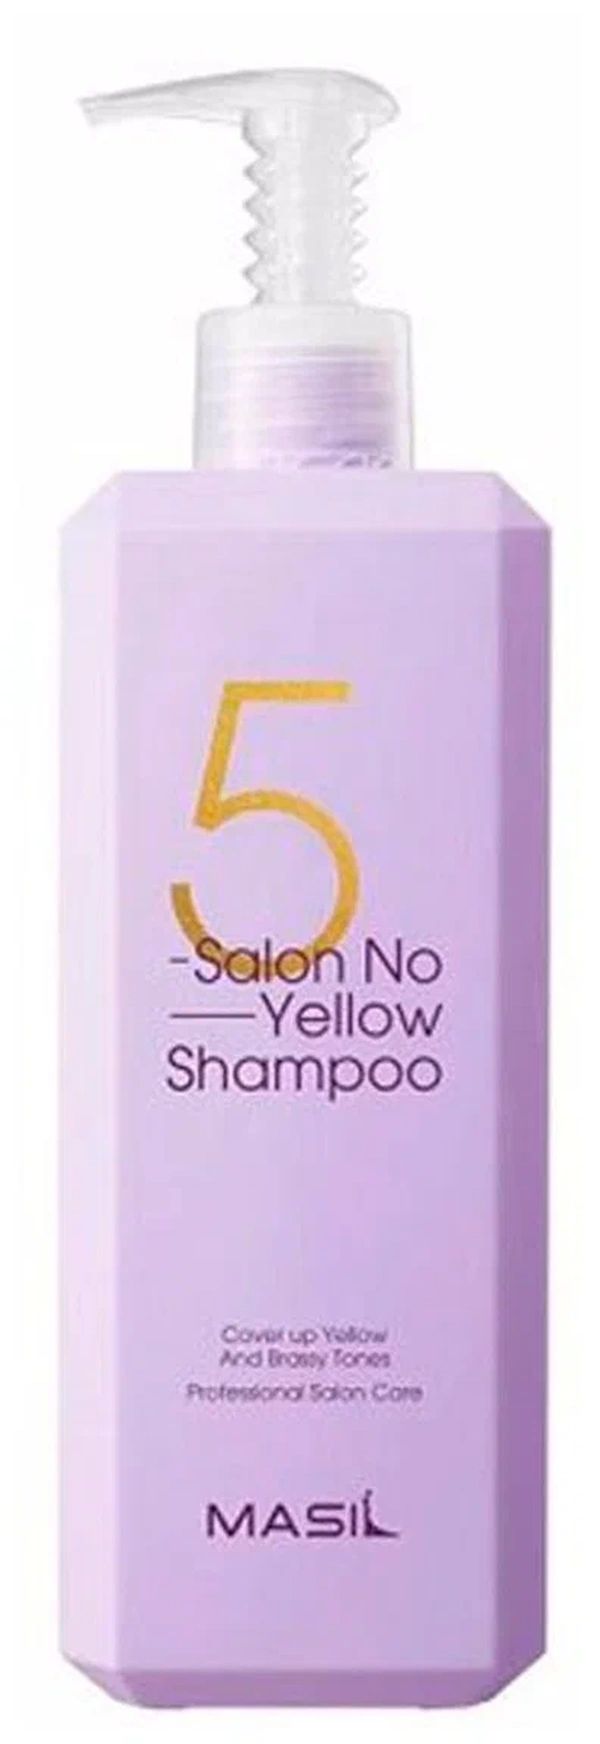 Тонирующий шампунь для осветленных волос MASIL 5 Salon No Yellow Shampoo 500 мл masil тонирующий шампунь для осветленных волос 500